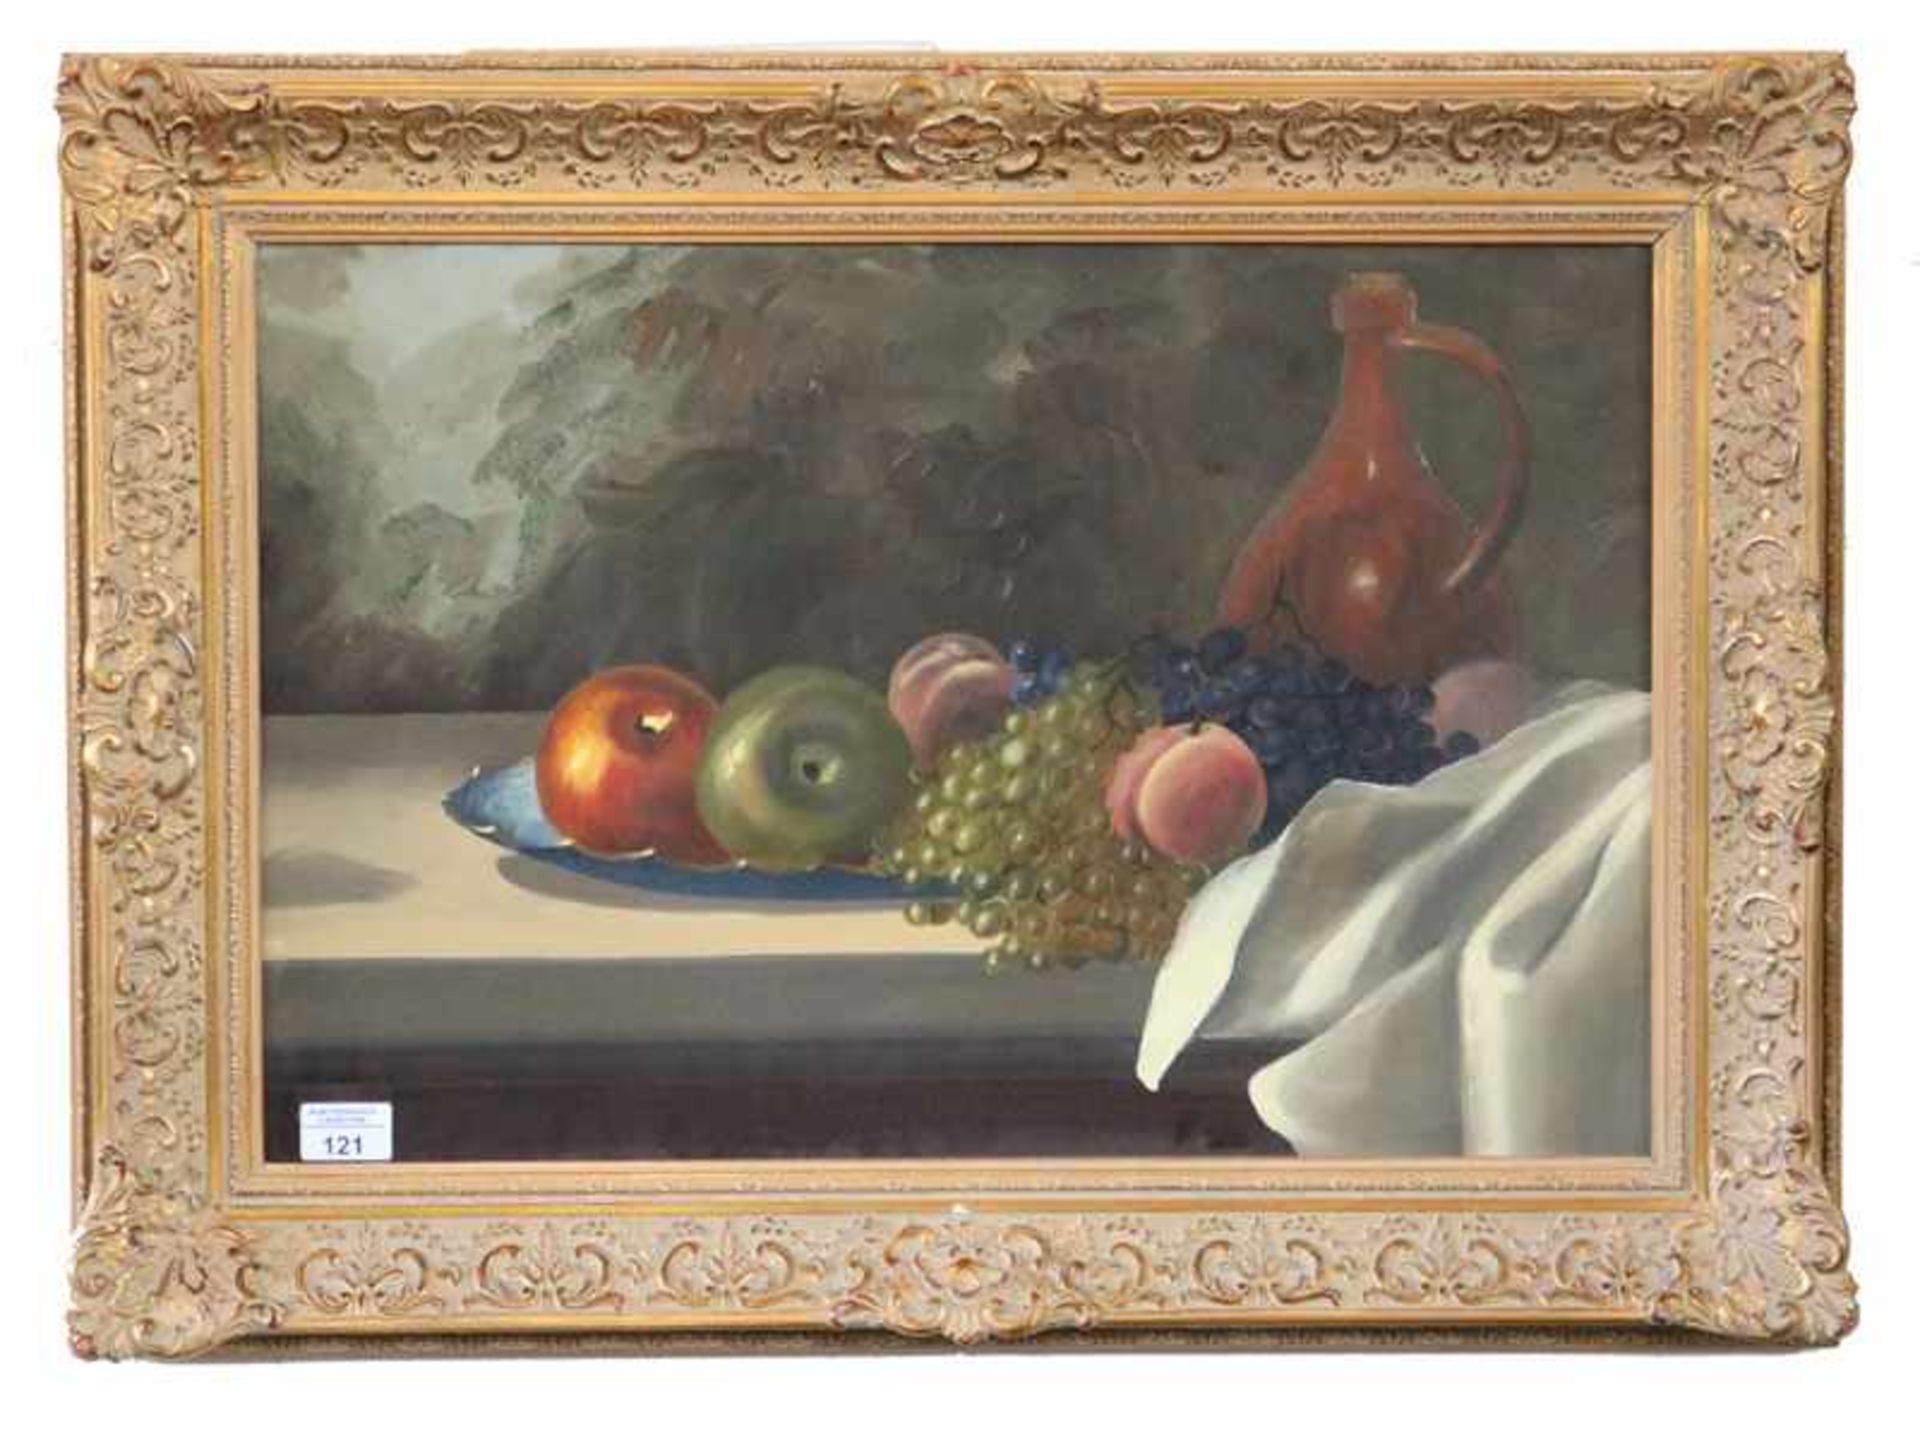 Gemälde ÖL/LW 'Stillleben mit Früchten und Krug', signiert Ruscher, Reinhold * 1918 Dresden * 1981